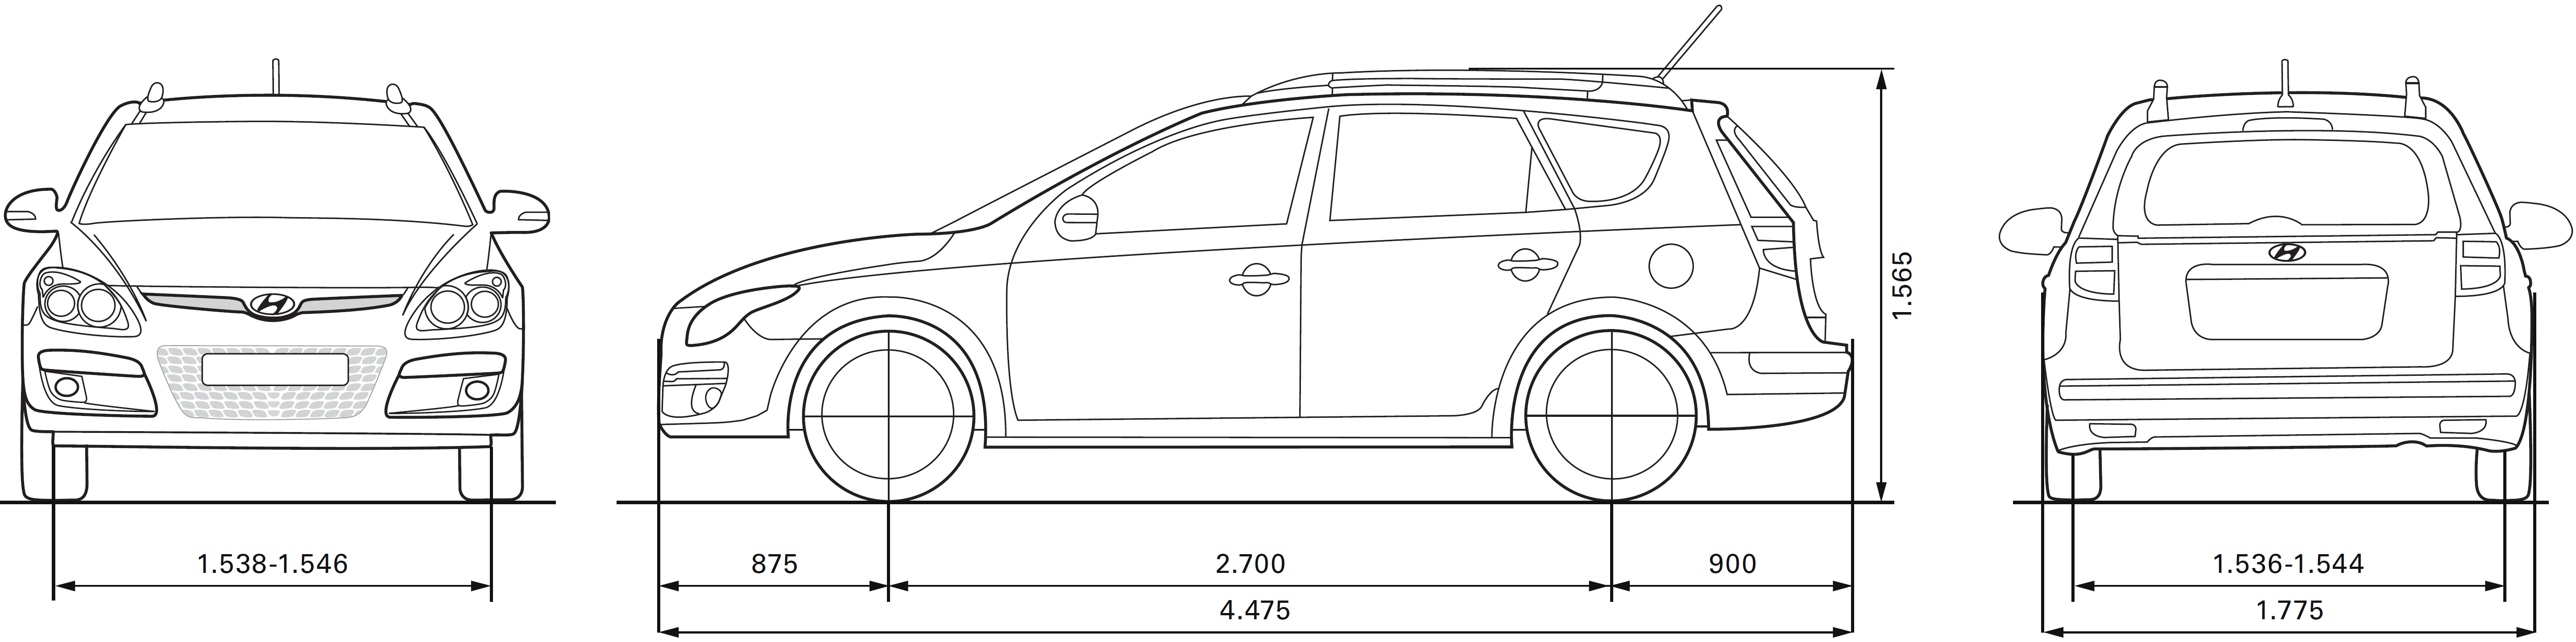 Hyundai i30 blueprint